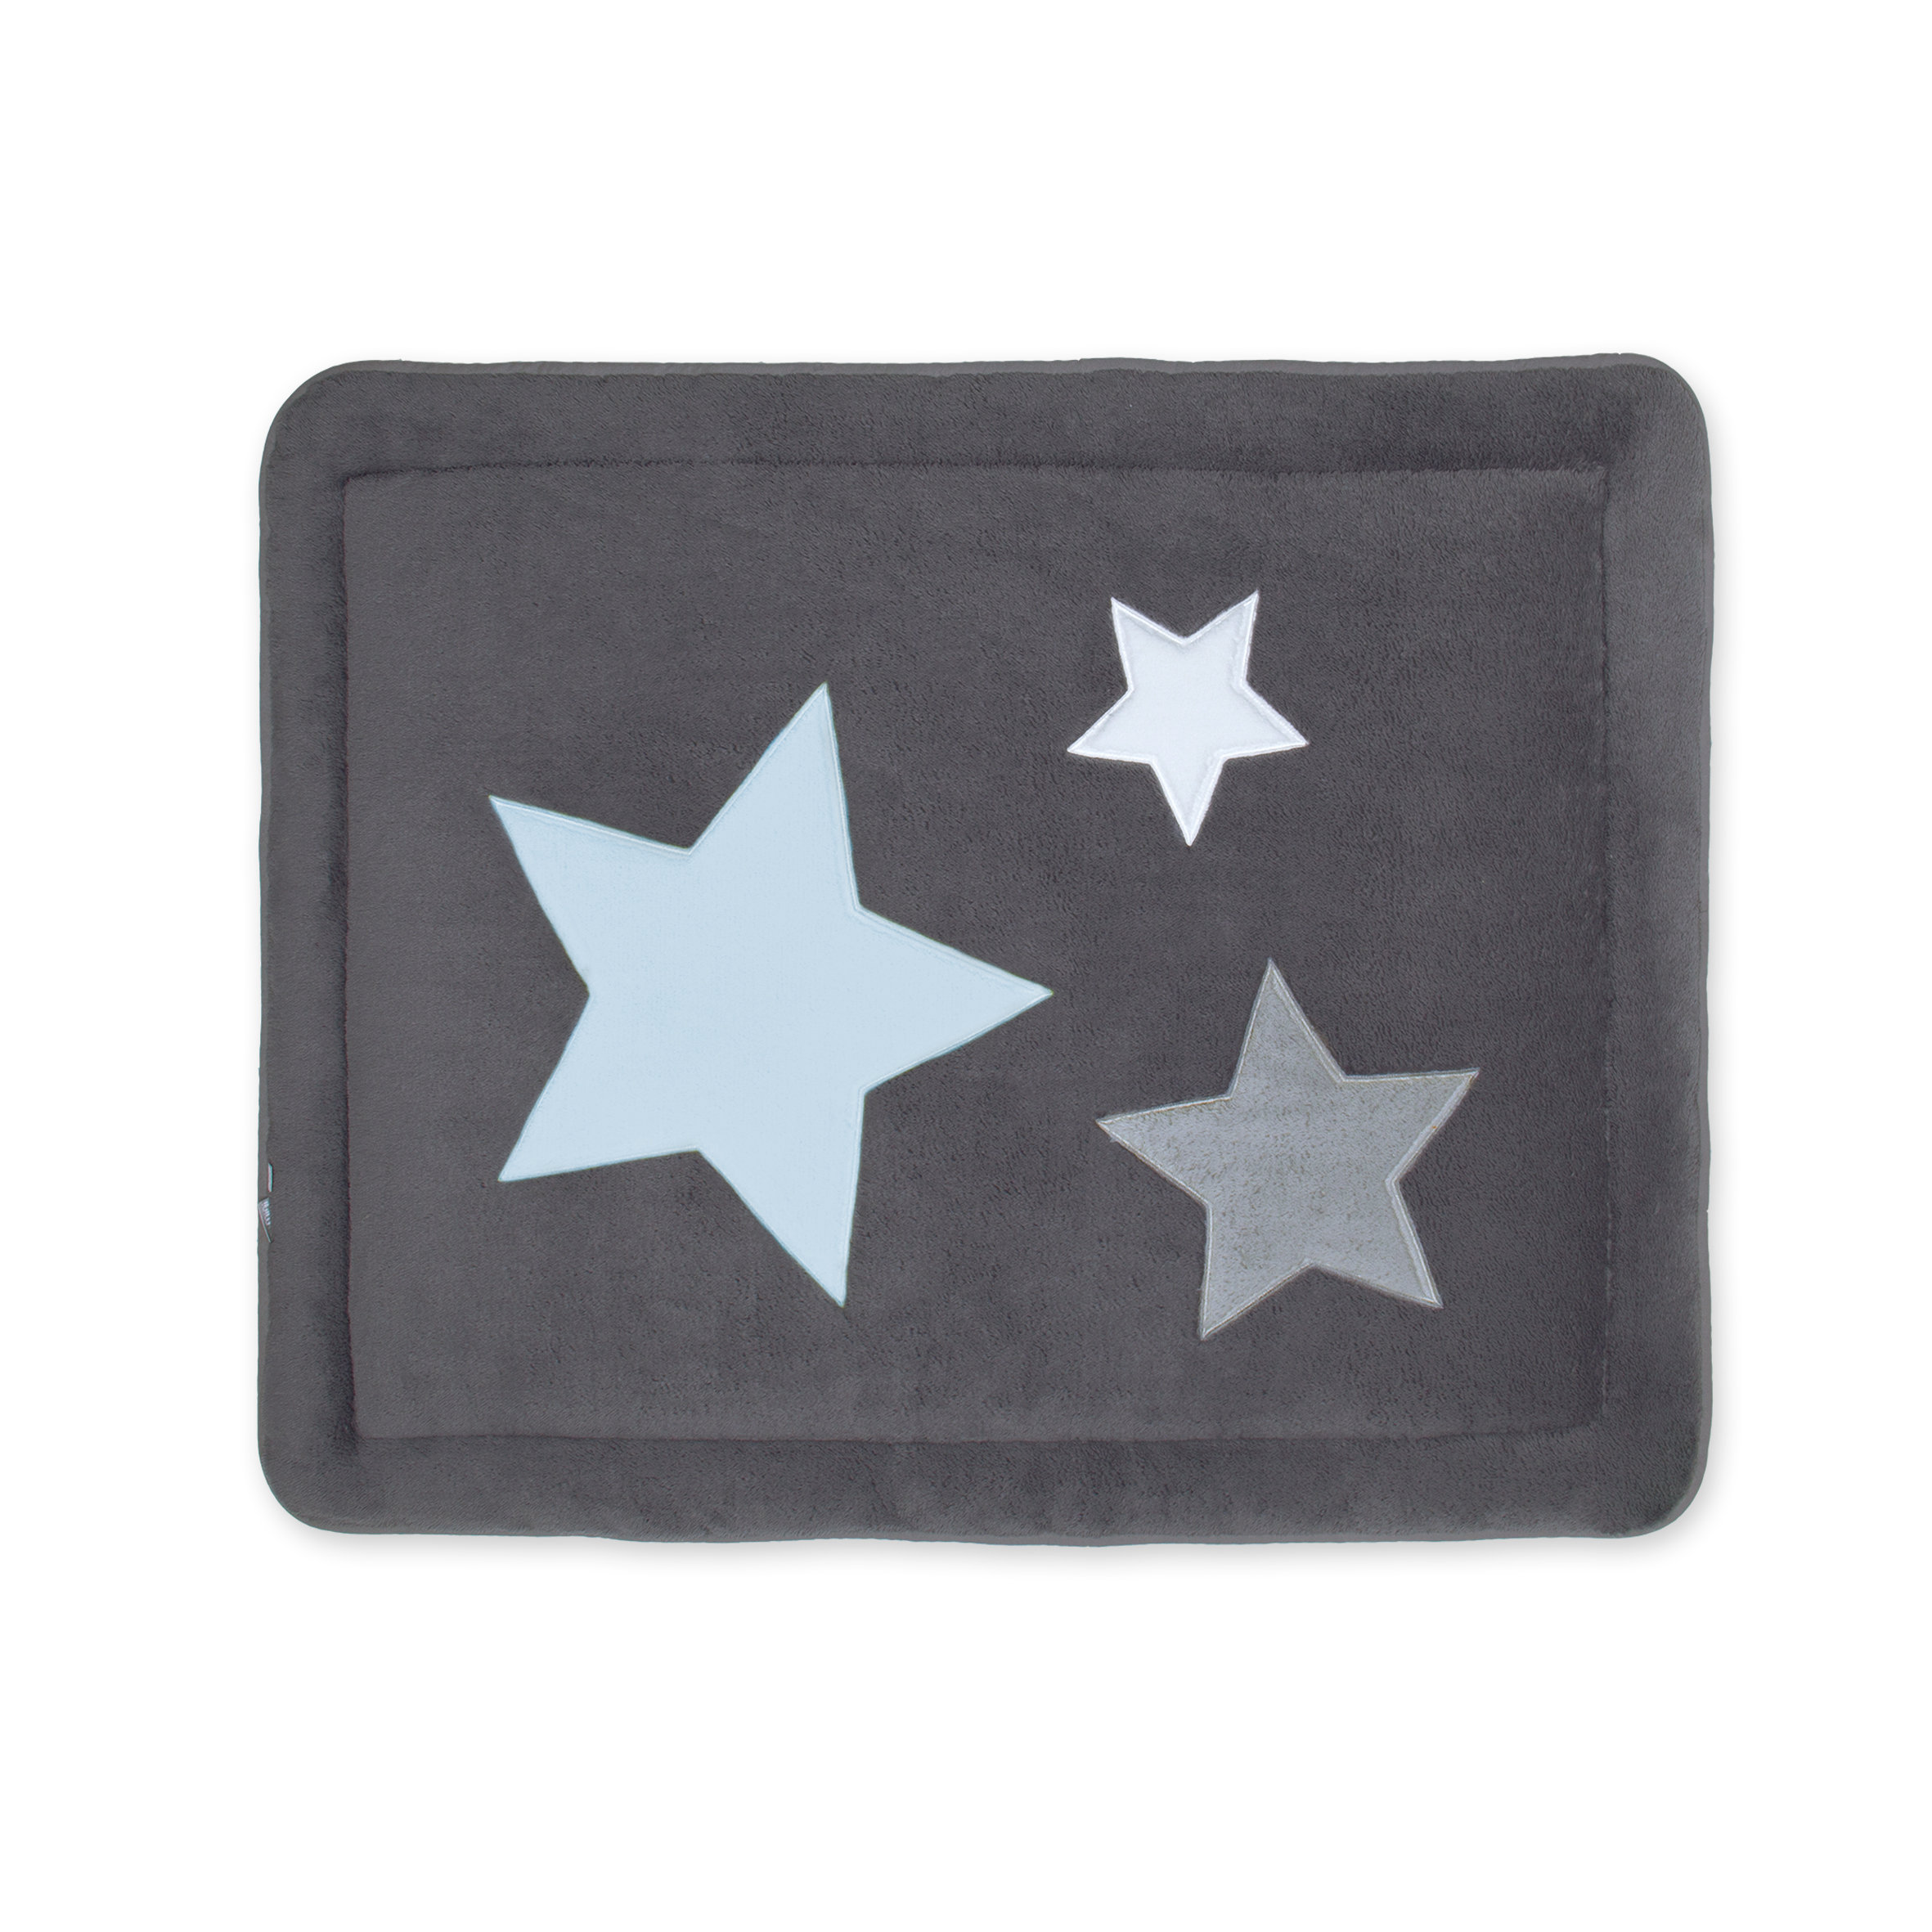 Laufstalleinlage Krabbeldecke Pady softy + terry 75x95cm STARB Little stars print pingu